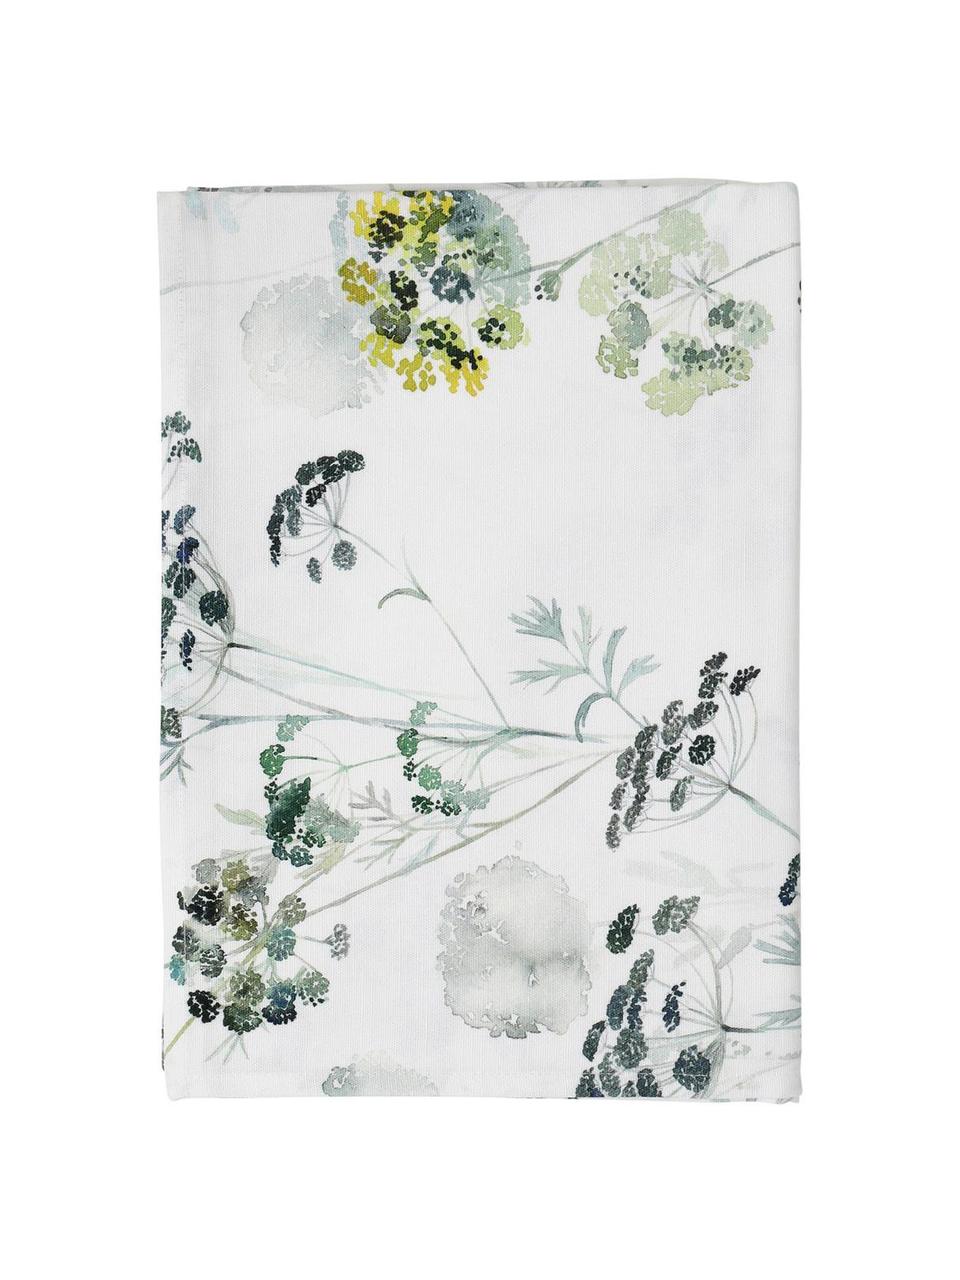 Tovaglia in cotone con motivo floreale Herbier, Cotone, Bianco, tonalità verdi, Per 4-6 persone (Larg.160 x Lung. 160 cm)